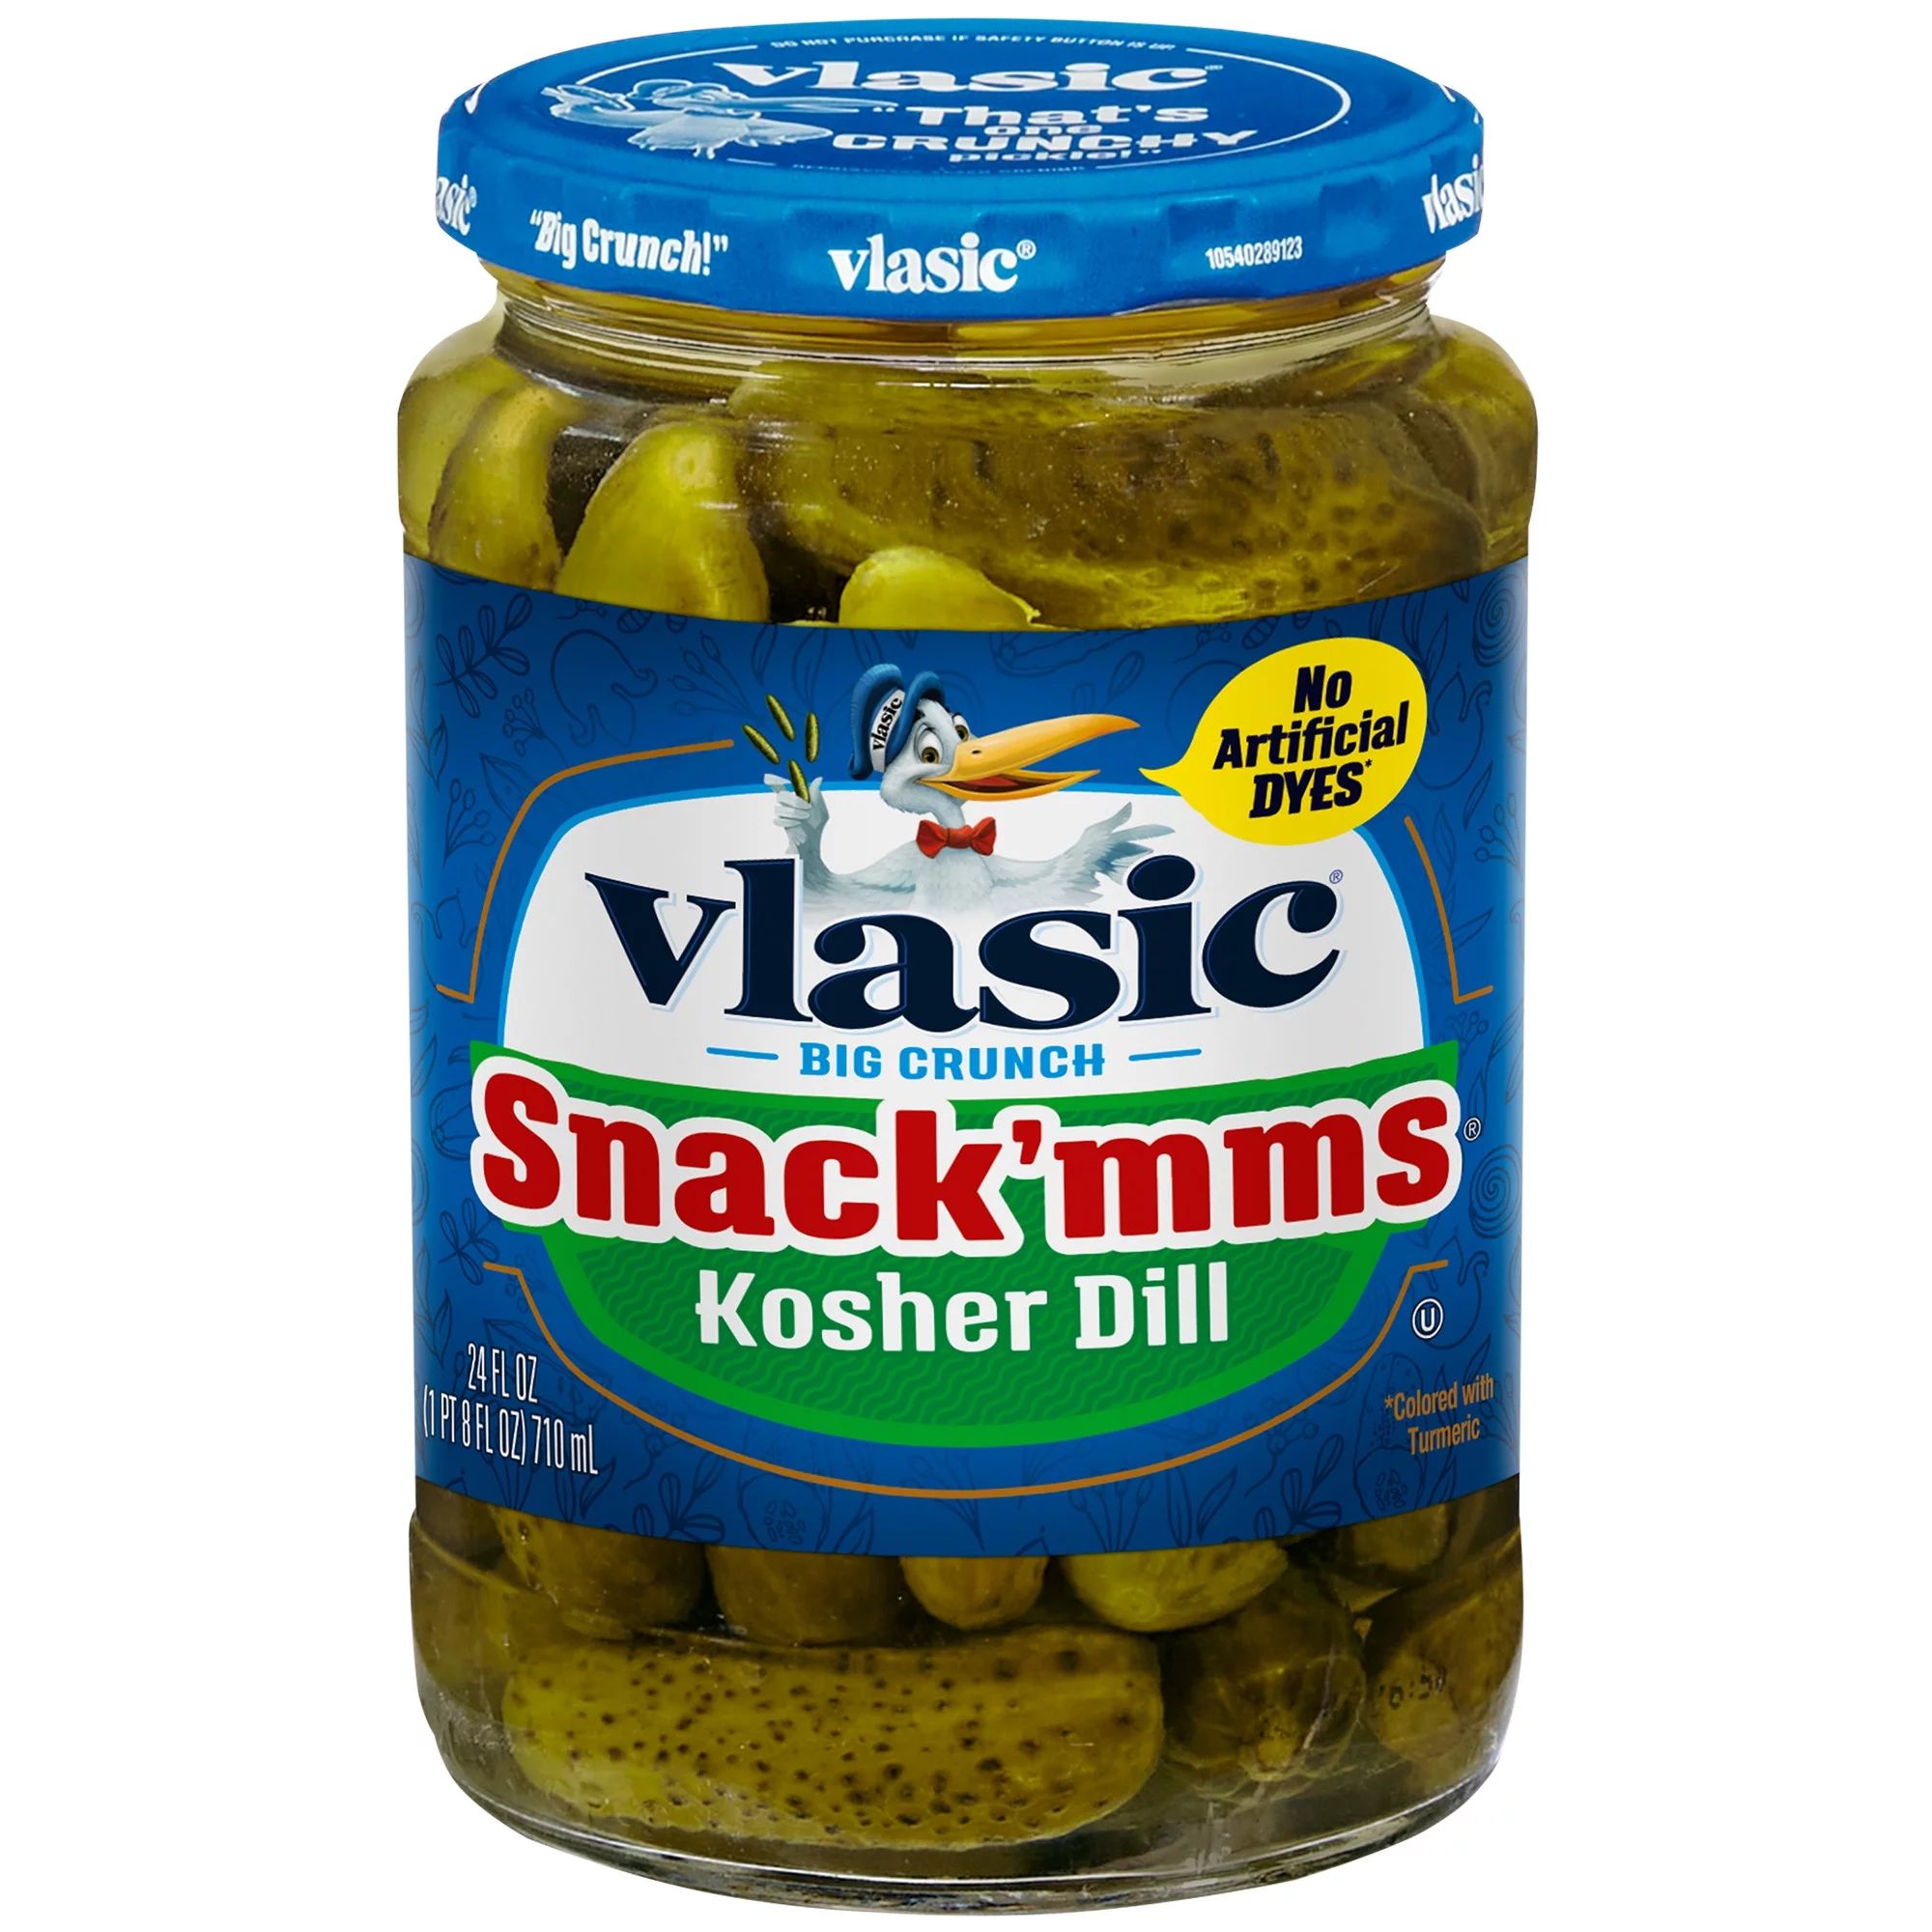 Vlasic Snack'mms Kosher Dill Pickles, Mini Dill Pickles, 24 fl oz Jar | Walmart (US)